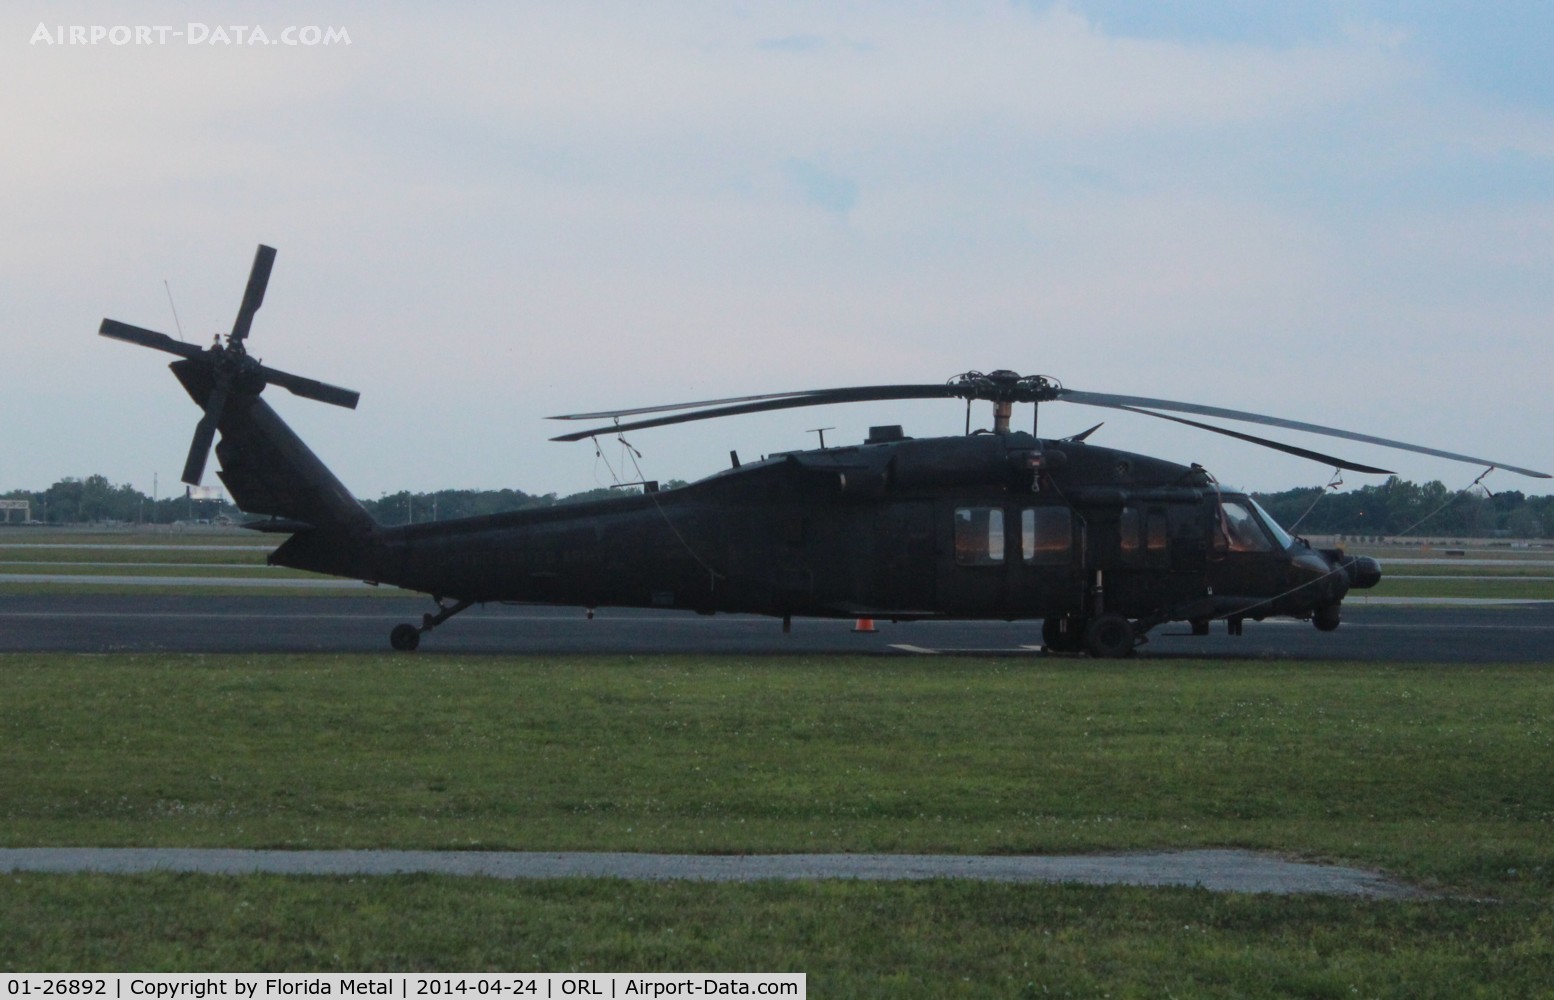 01-26892, 2001 Sikorsky UH-60 C/N 70-2690, UH-60 Blackhawk